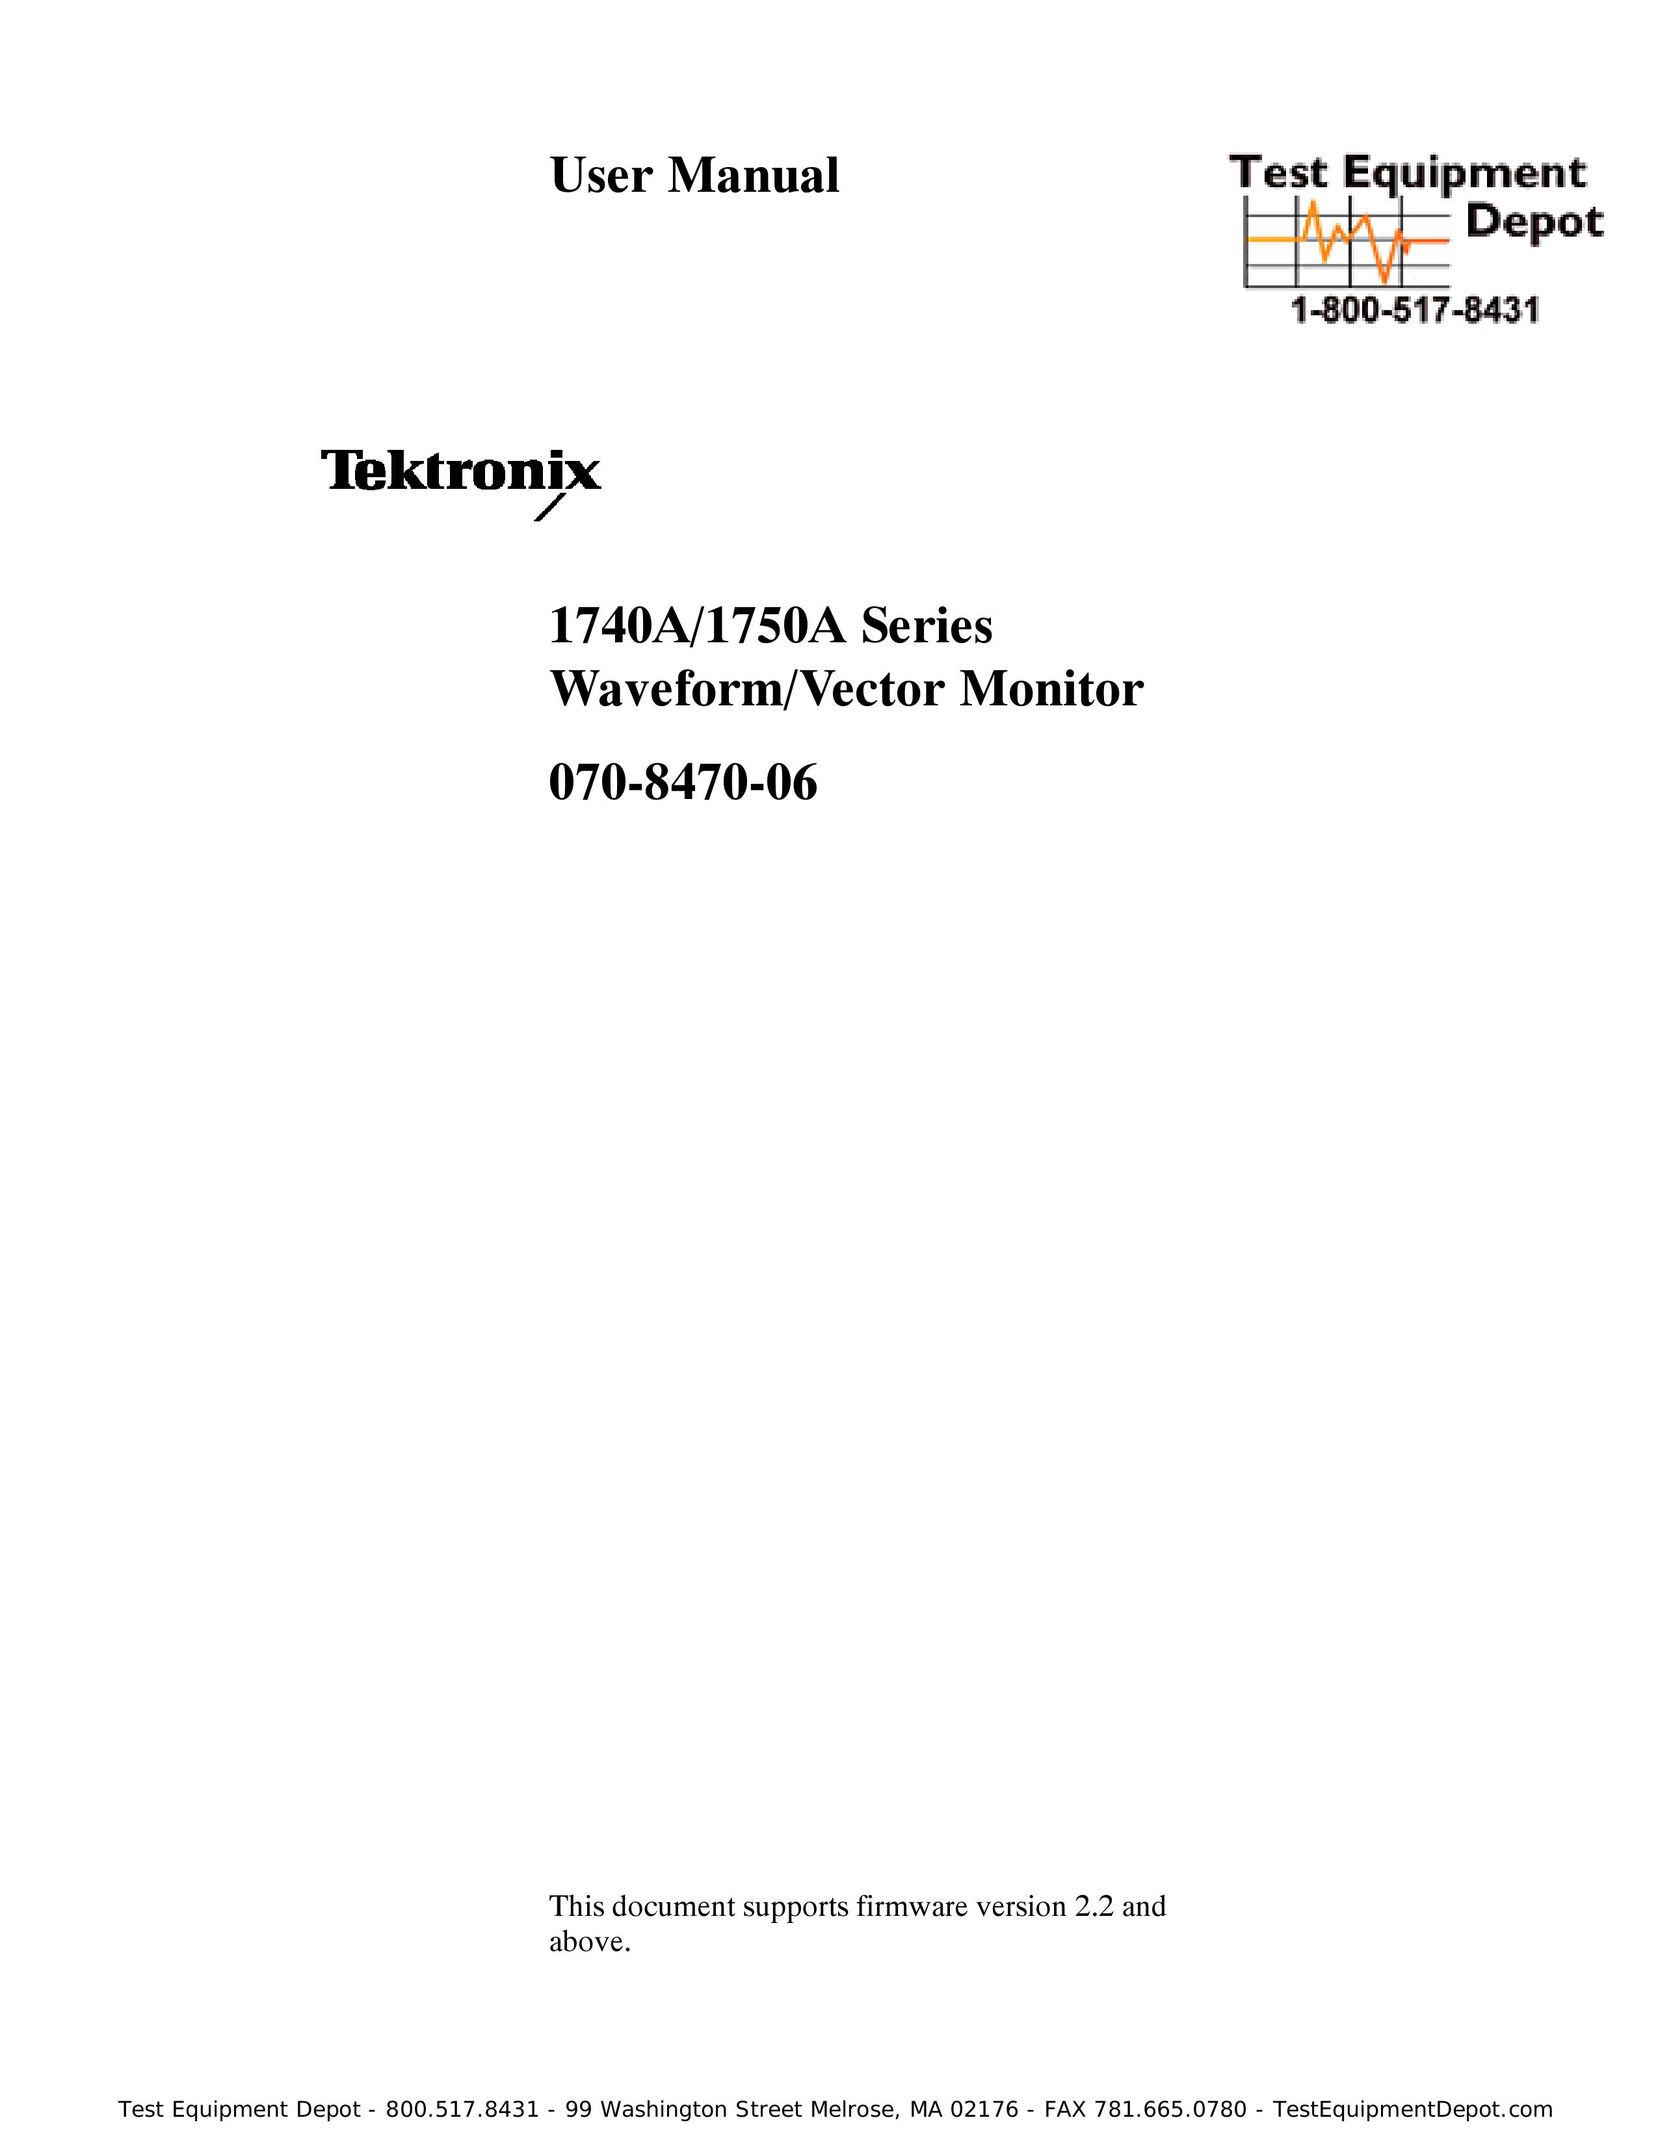 Tektronix 1740A/1750A Computer Monitor User Manual